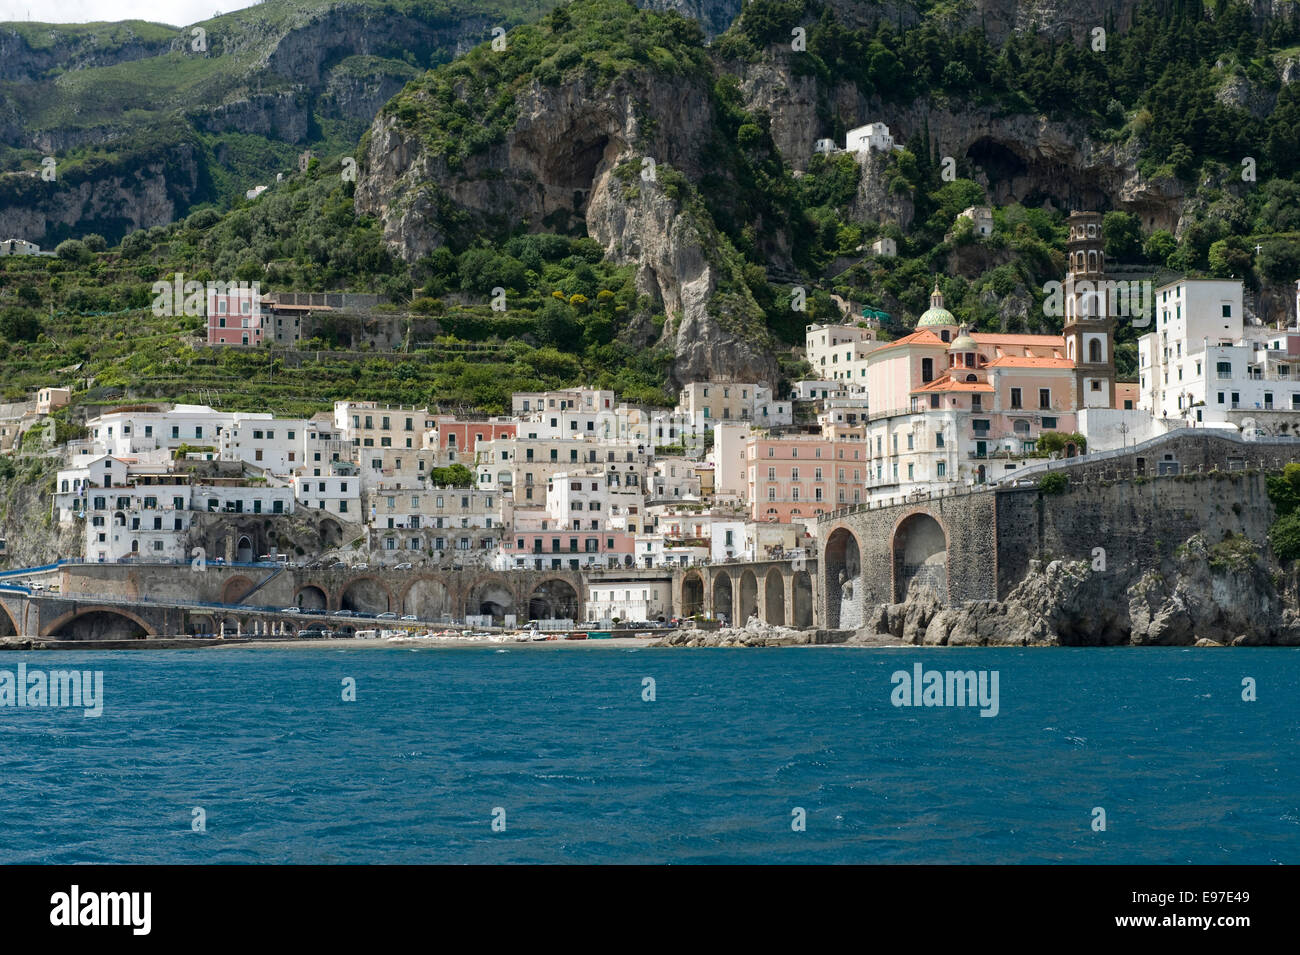 La ville de Atrani près de Amalfi vu depuis un bateau sur la baie de Salerne, Province de Salerne, Campanie, Italie Mai Banque D'Images